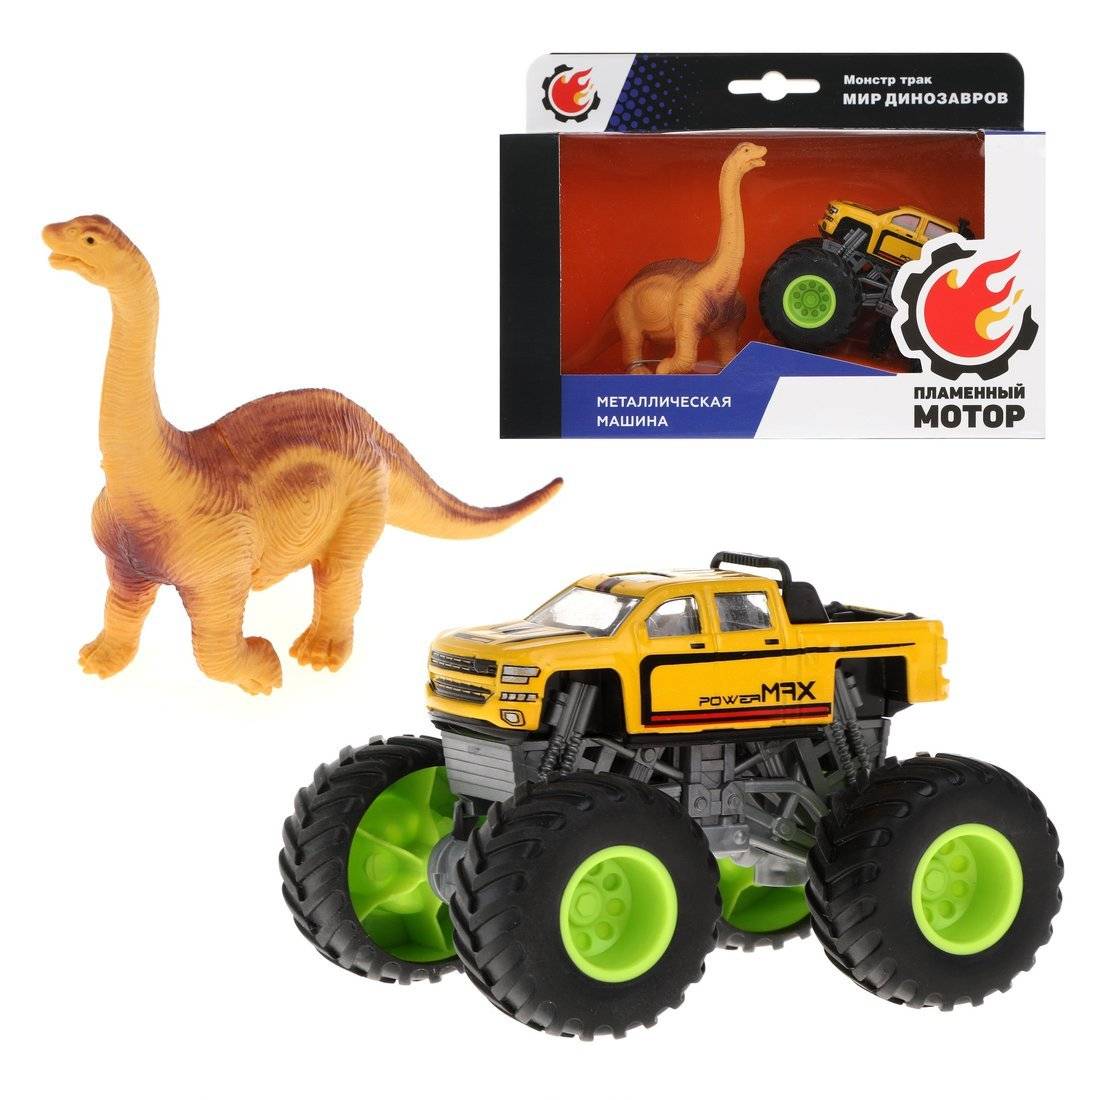 Монстр трак Мир динозавров, мет.машина, фигурка брахиозавра Пламенный мотор 870533